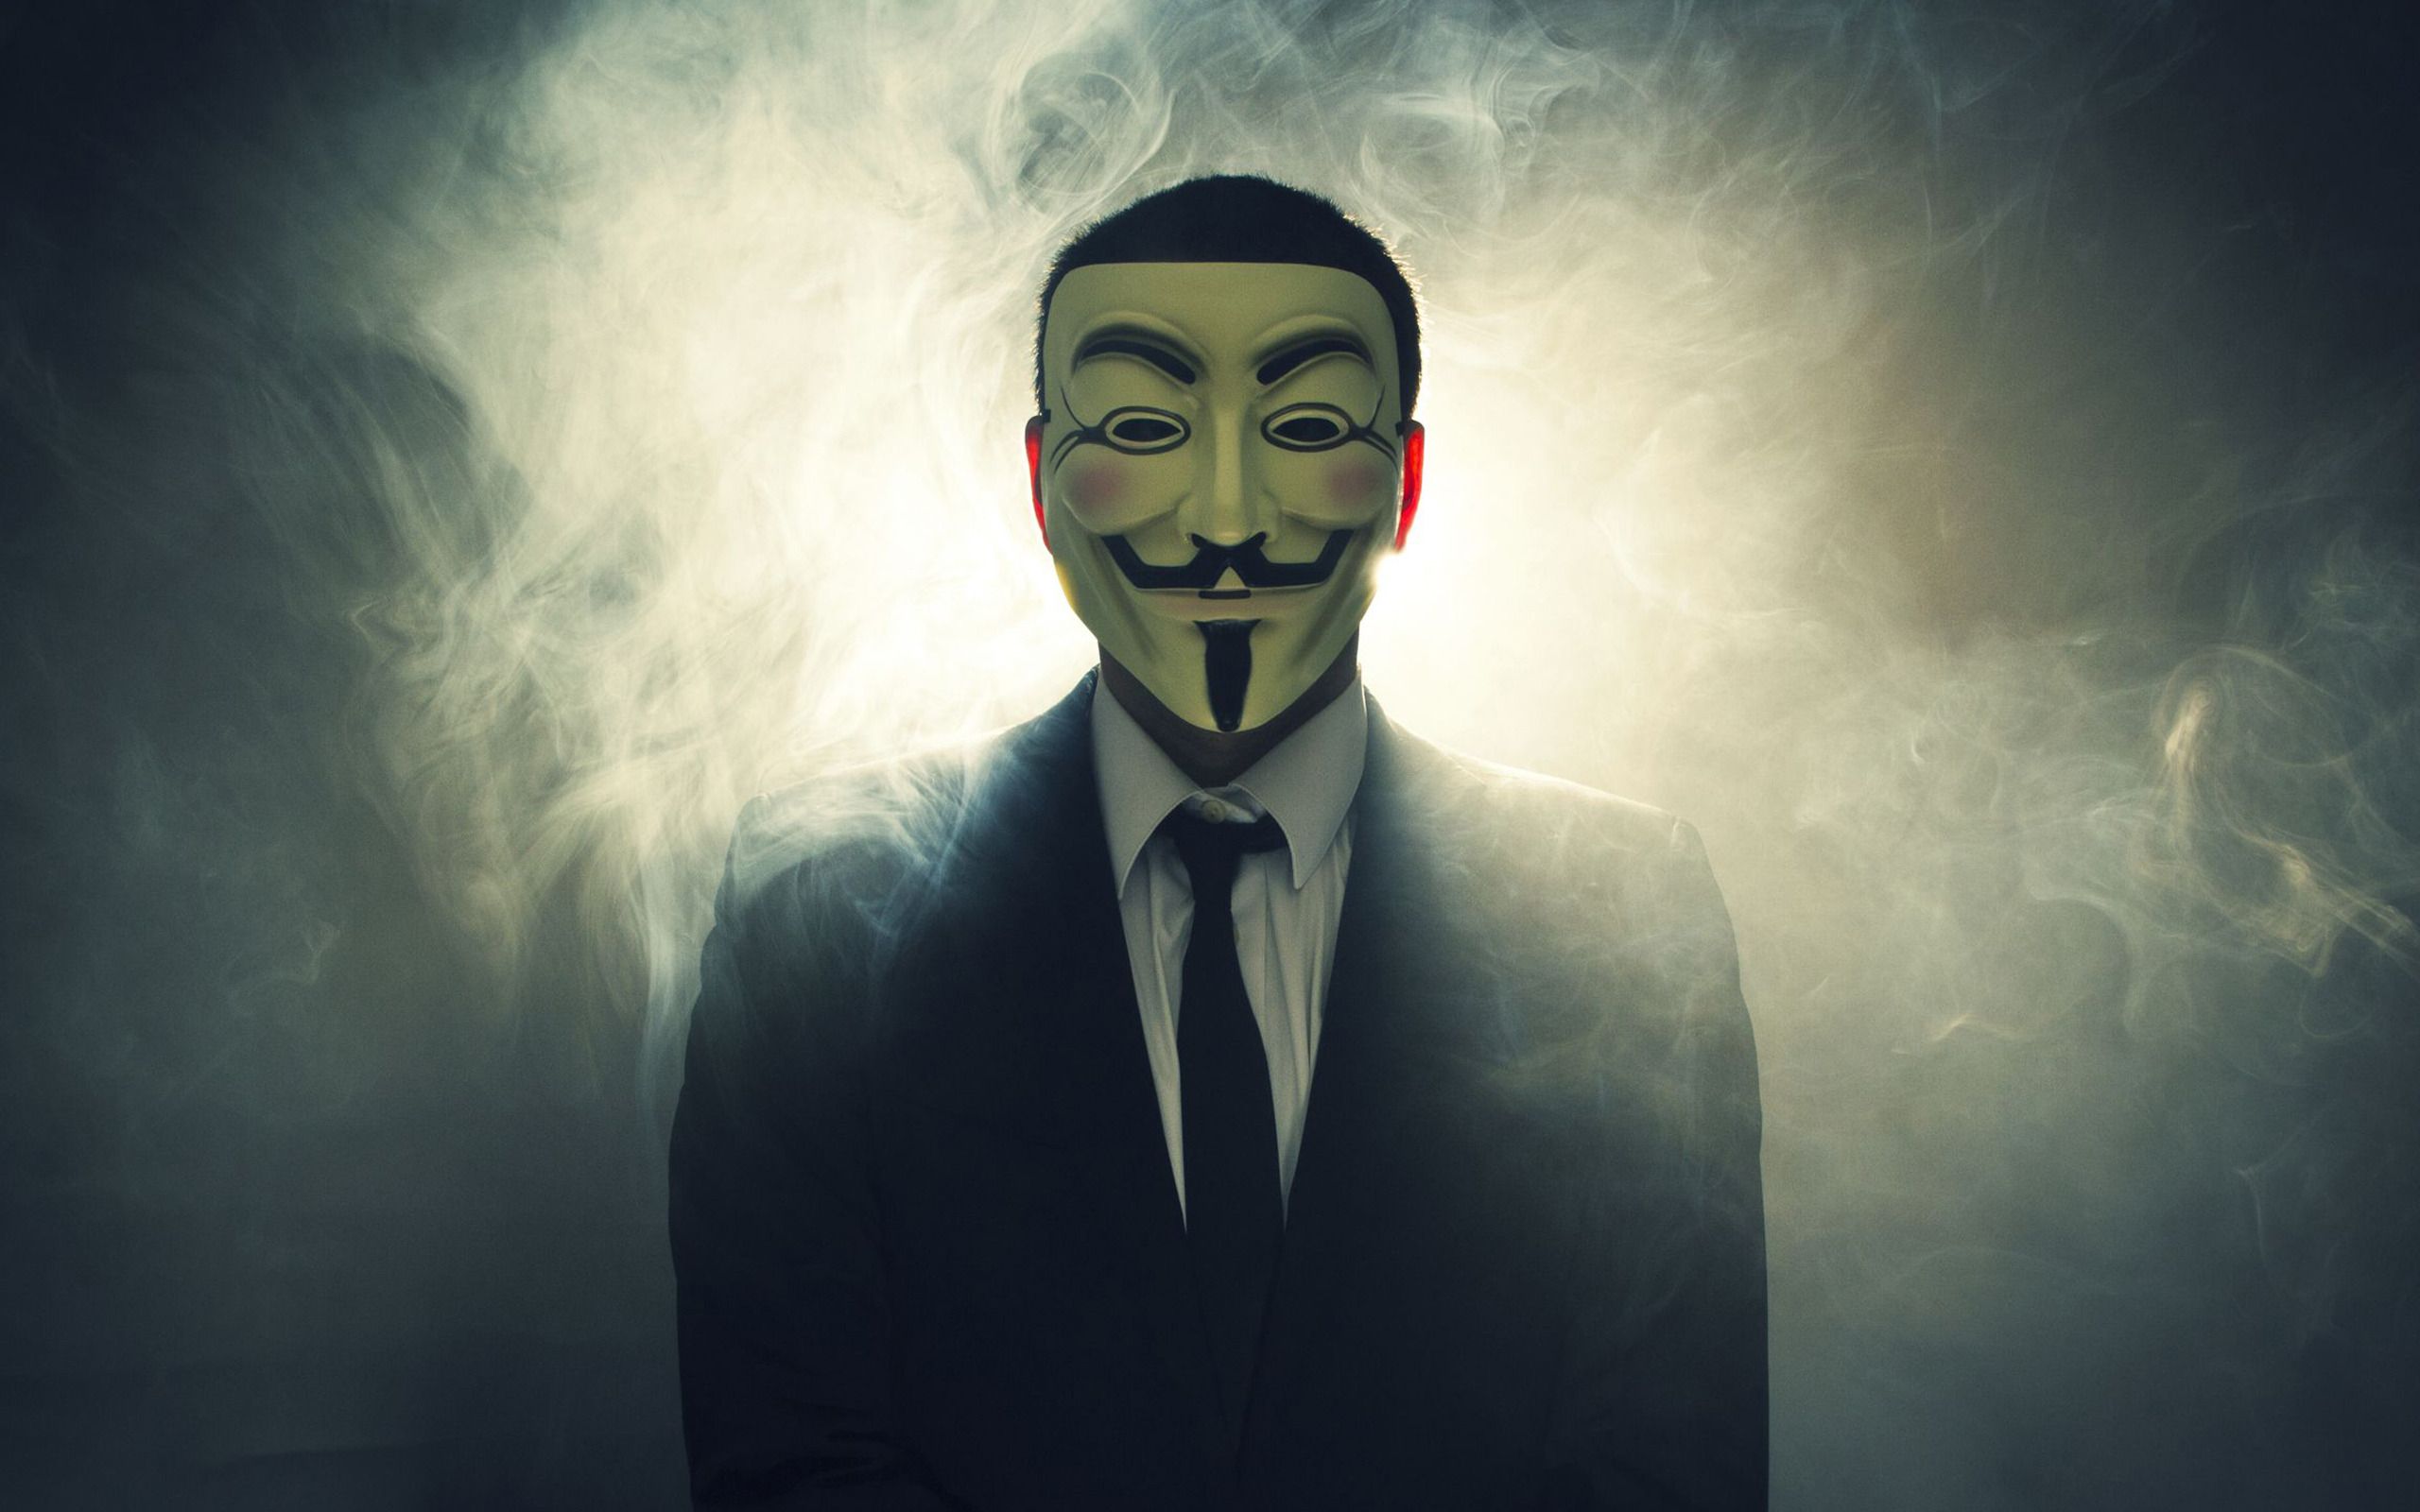 Minds : un réseau social sécurisé recommandé par les Anonymous